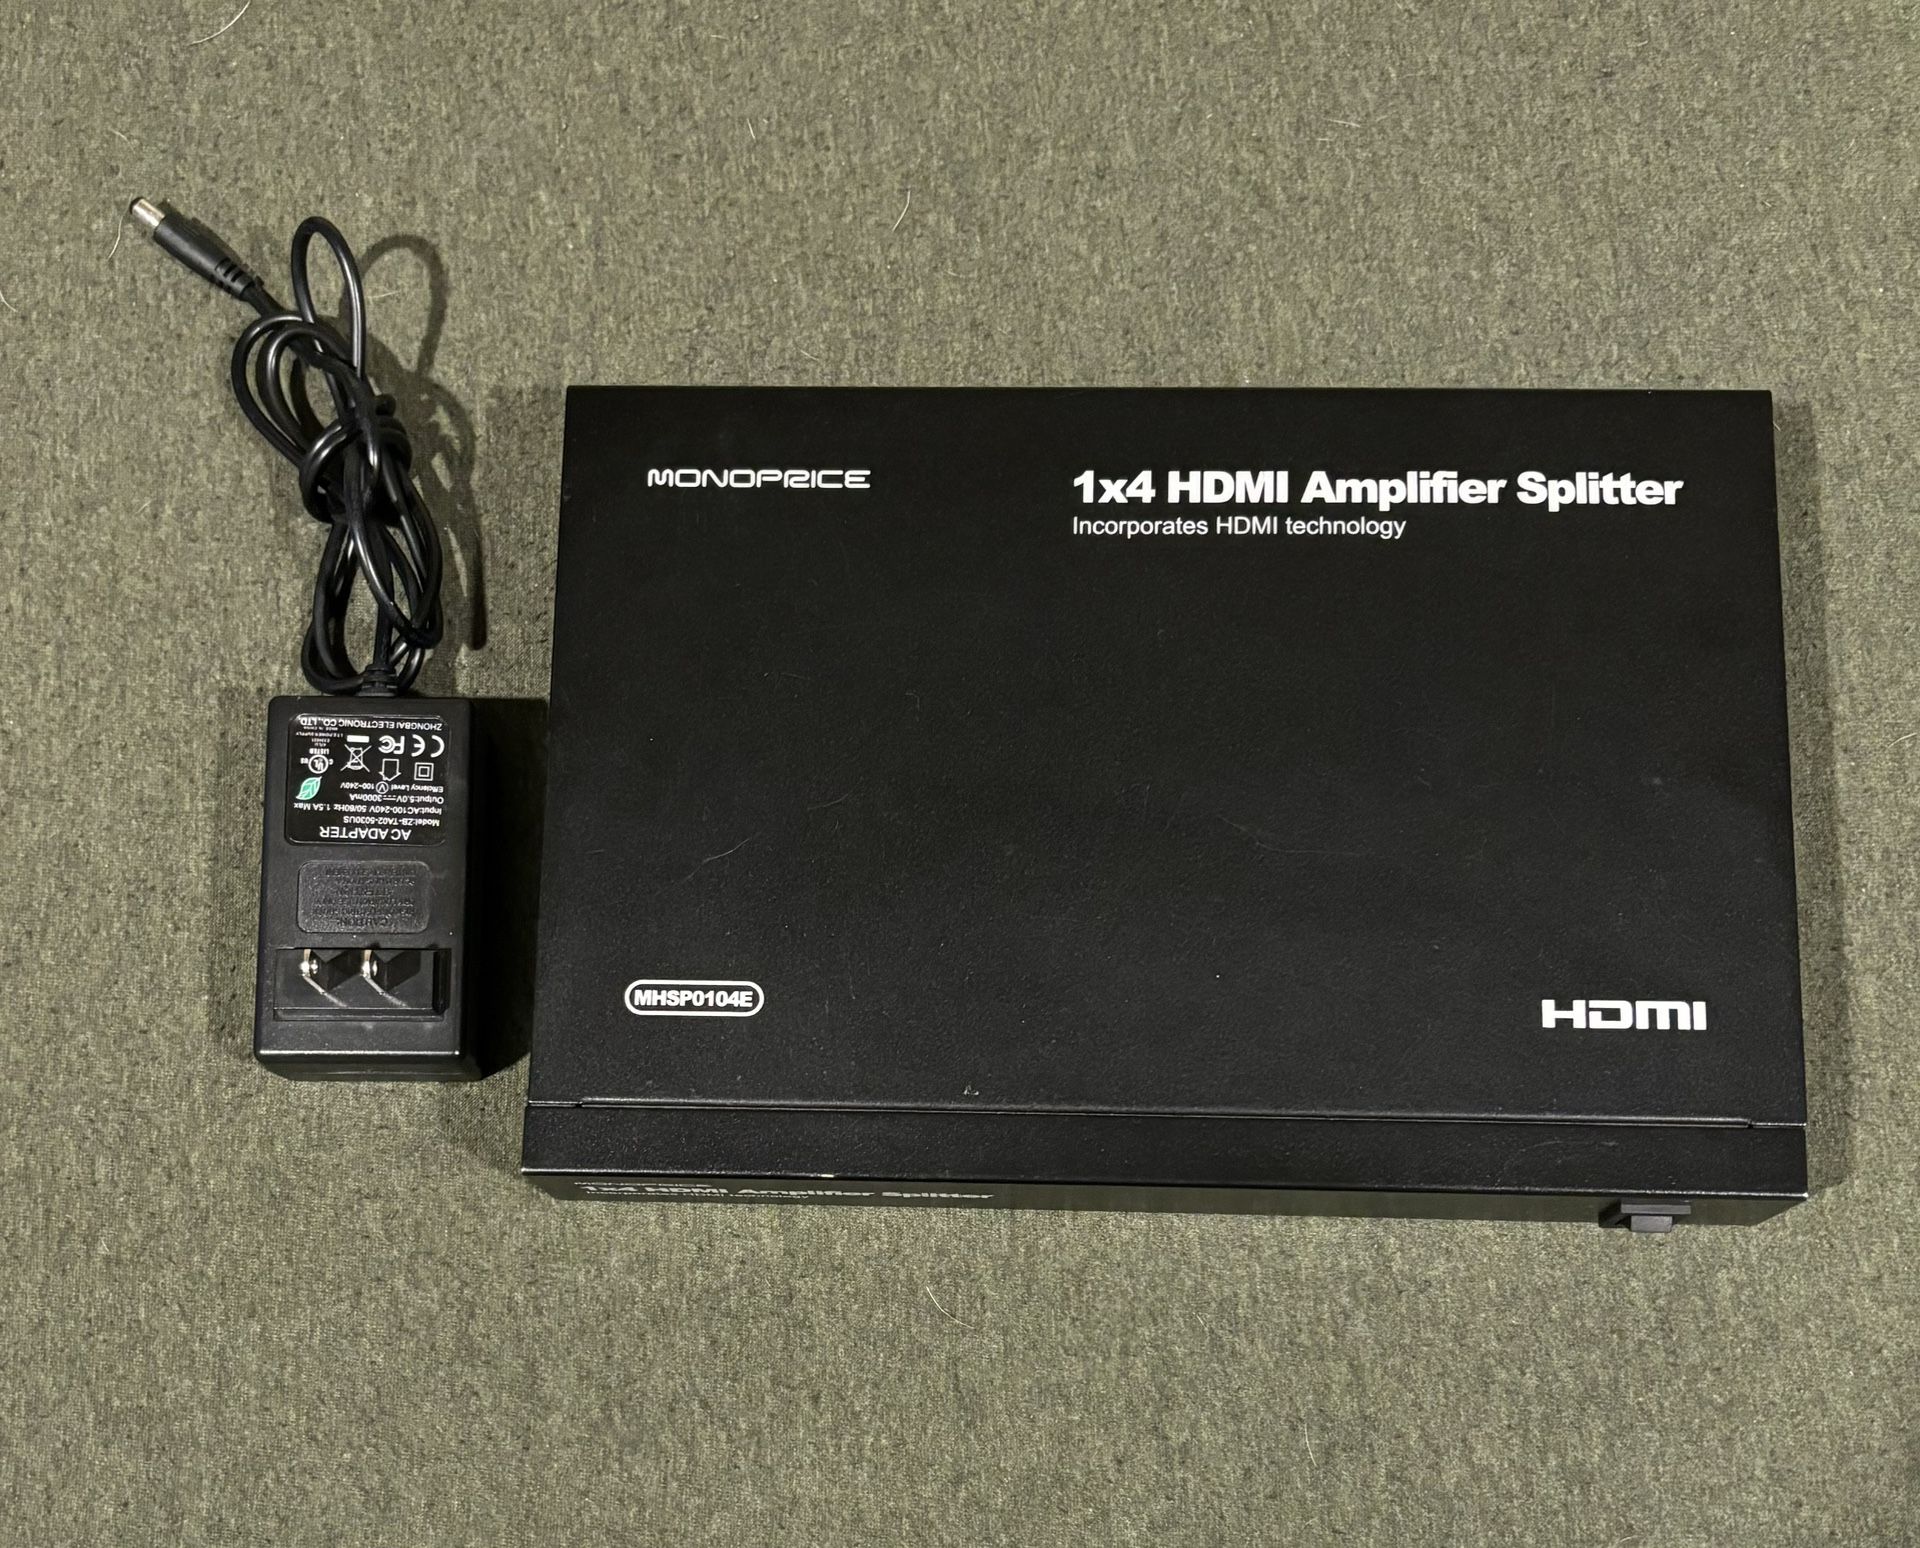 HDMI Amplifier Splitter